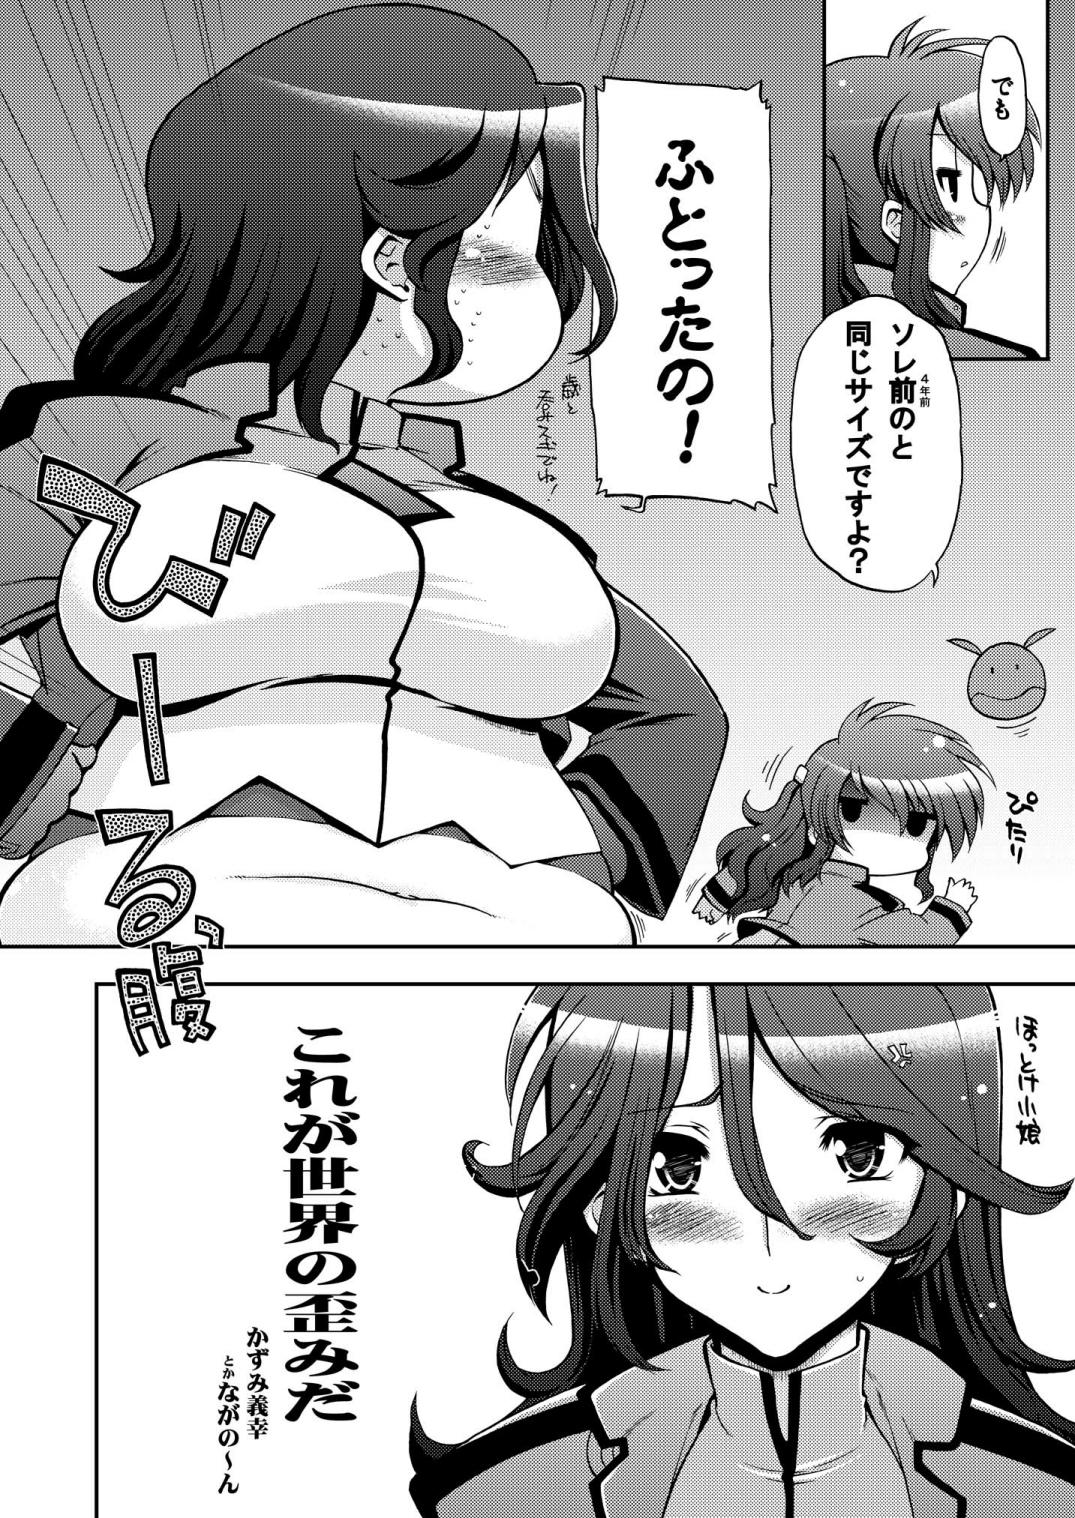 Asiansex Korega Sekai no Hizumida - Gundam 00 Oriental - Page 5